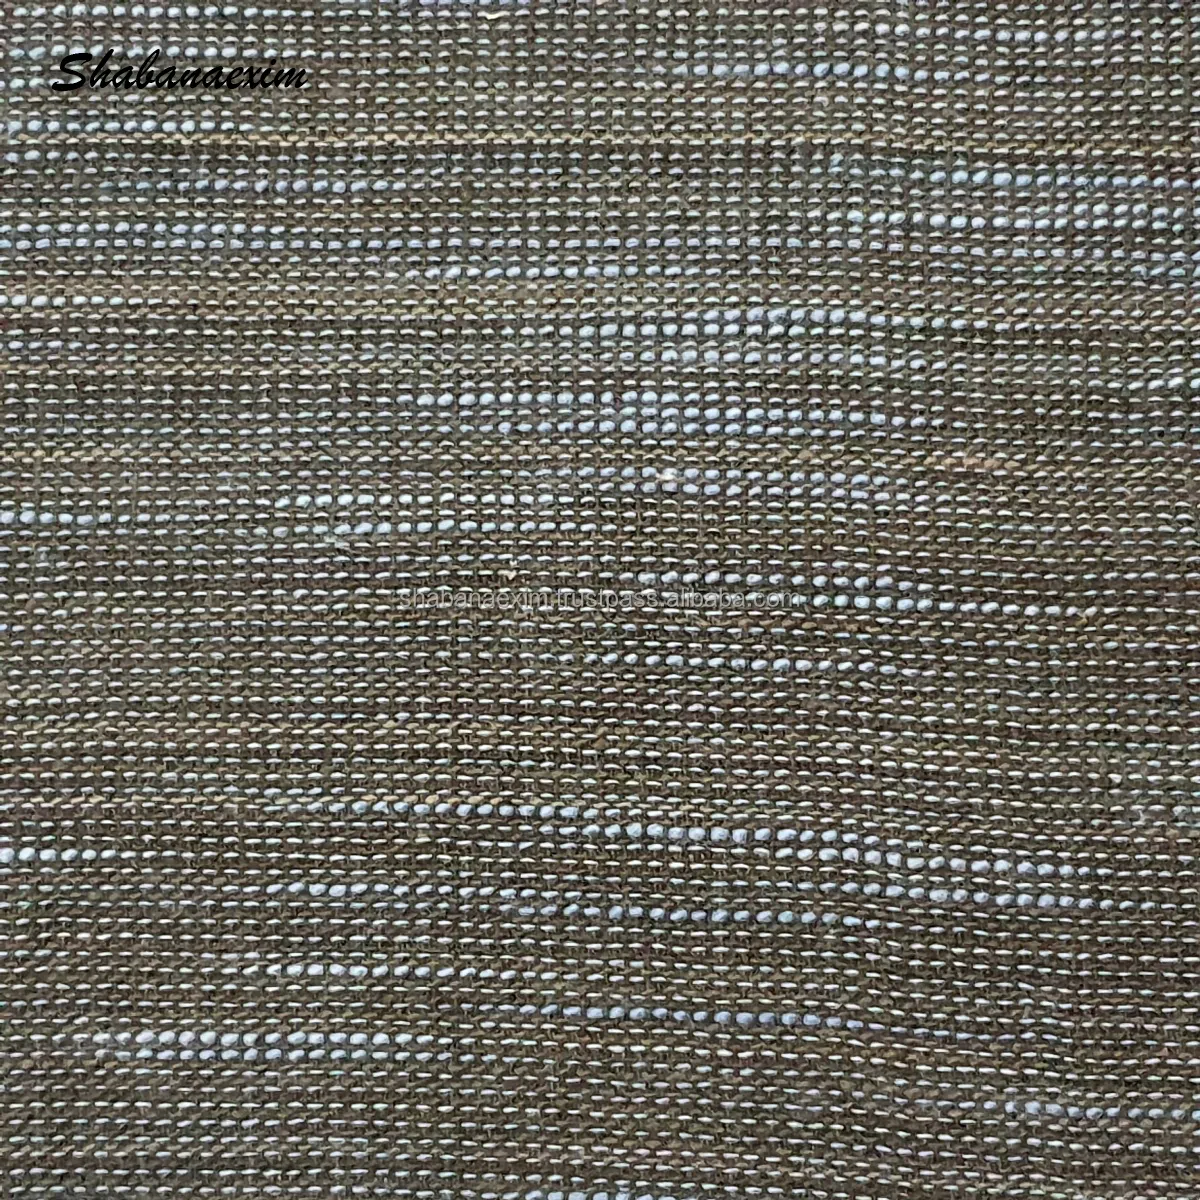 बनावट कपड़ा सोफा कवर कपड़े के लिए फर्नीचर कुशन ठोस रंग Handwoven कंबल कपास कपड़े